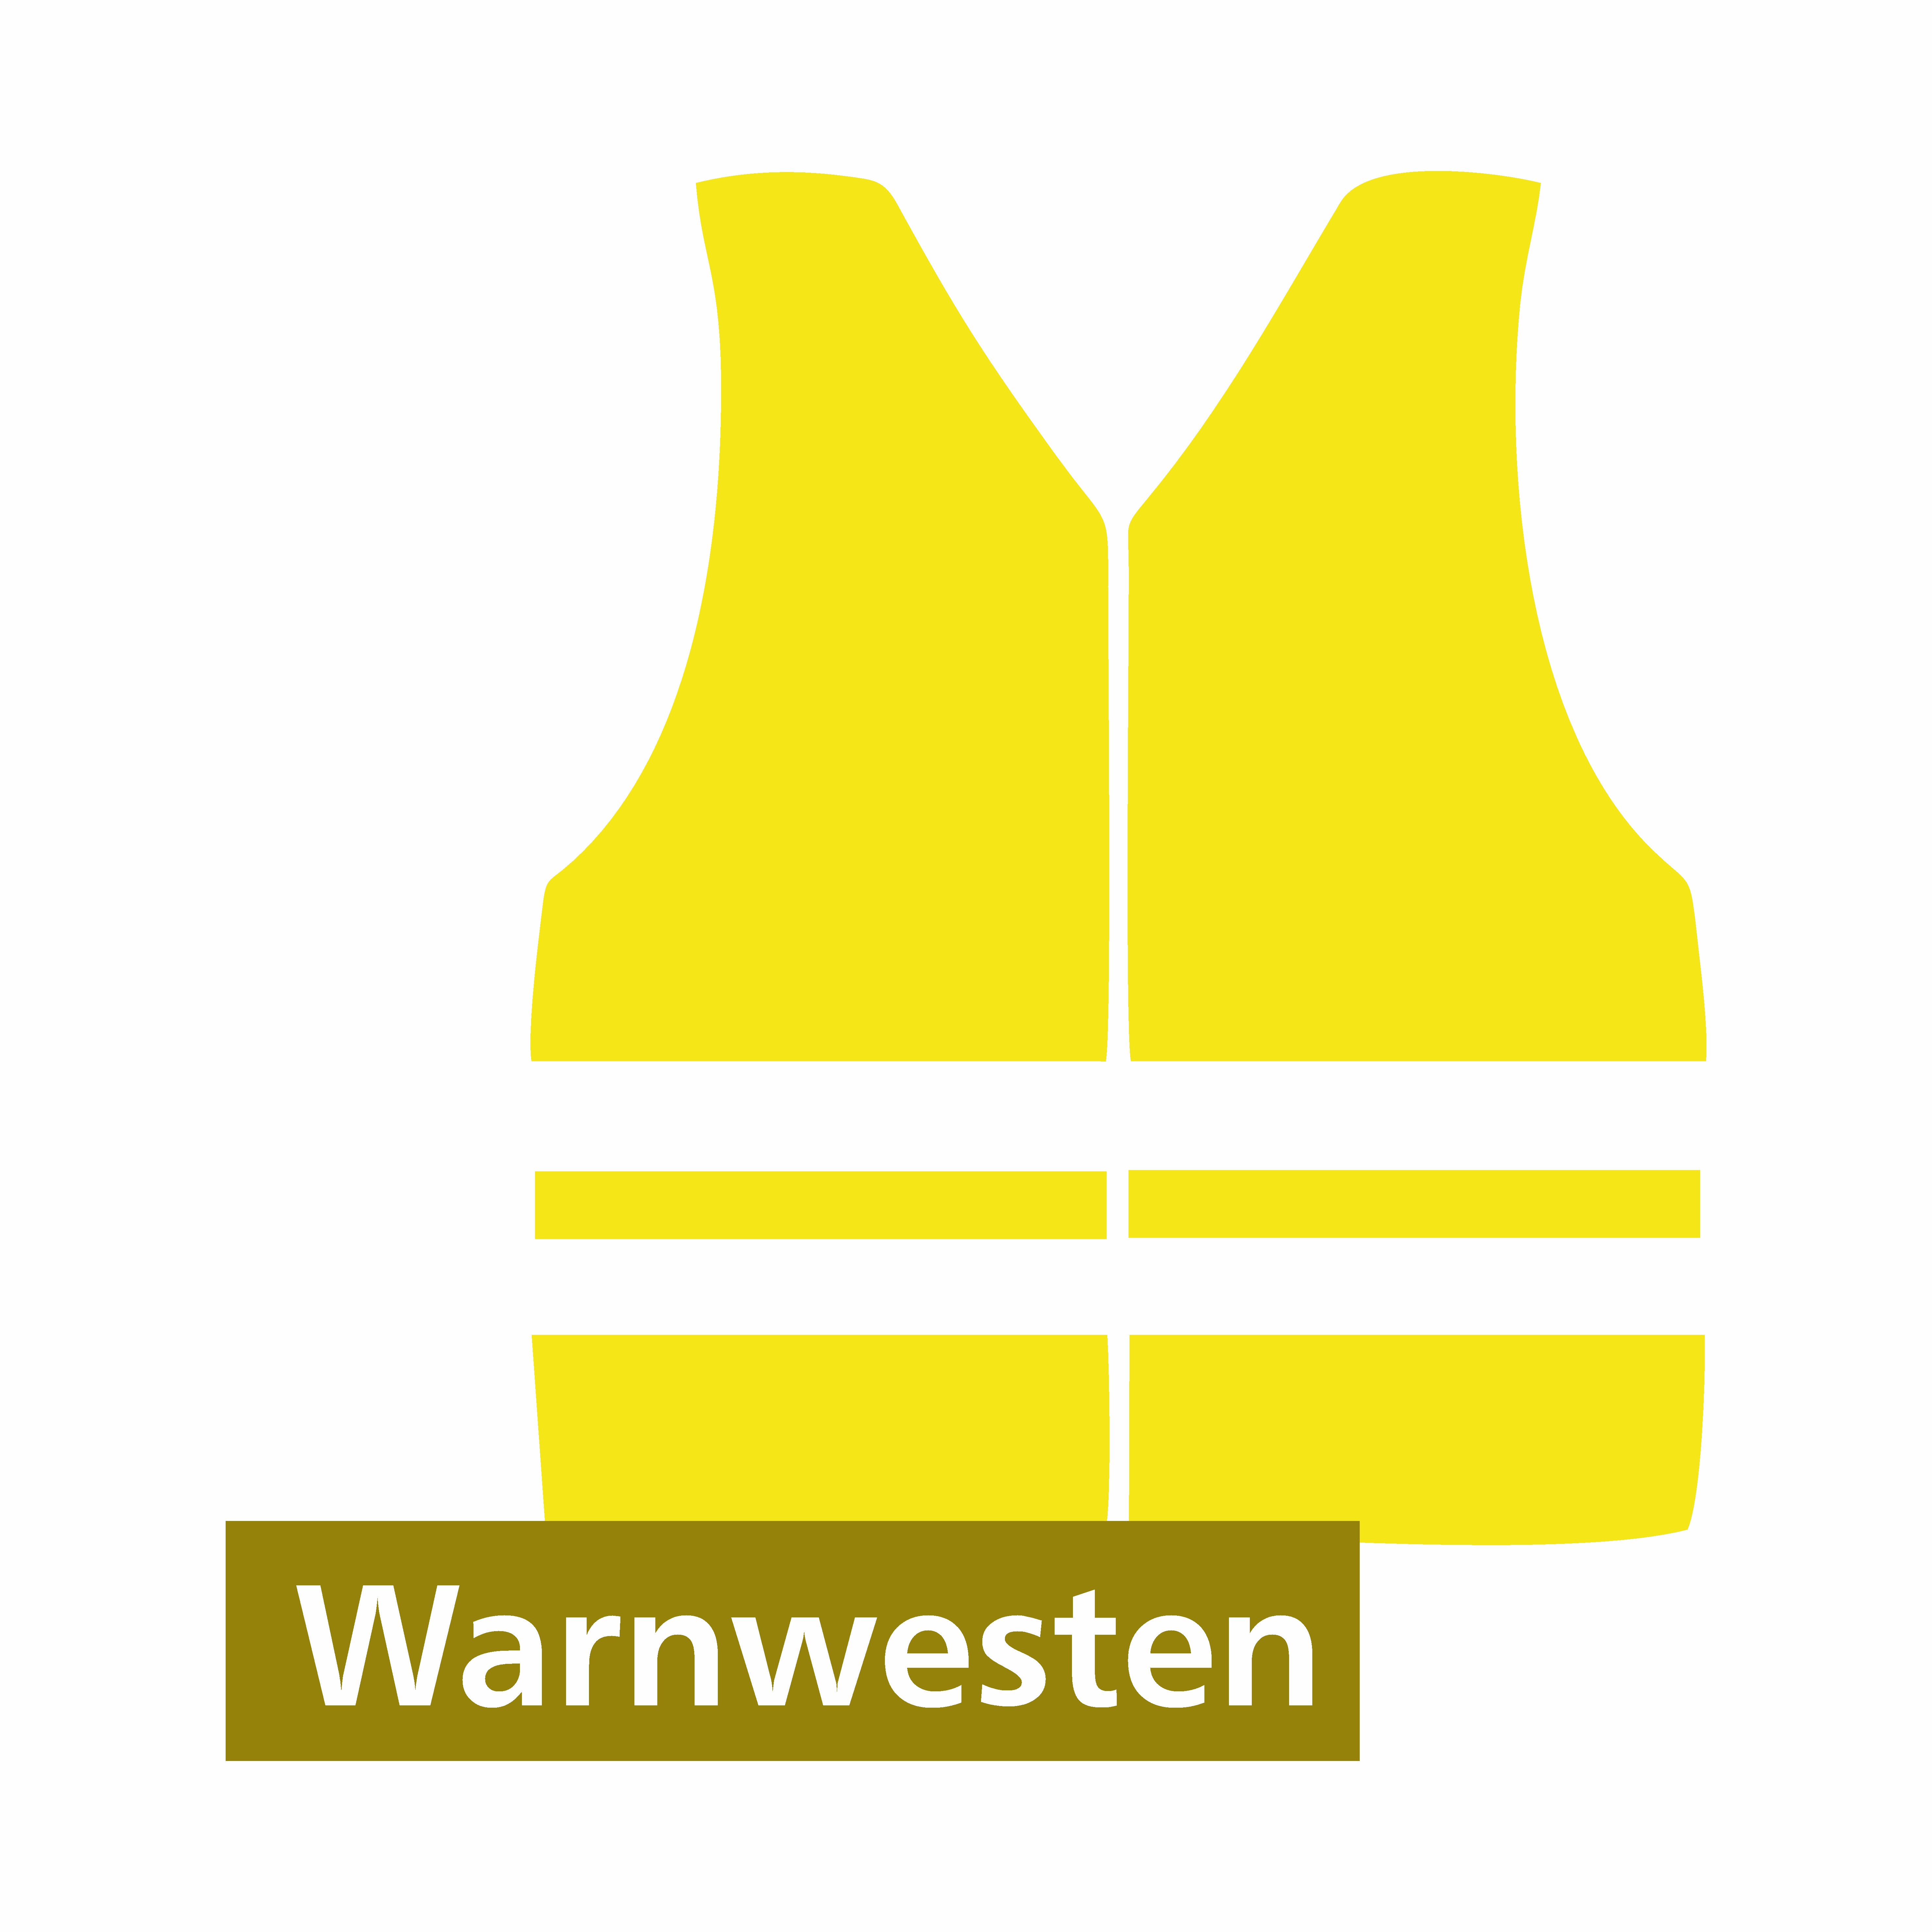 Warnwesten kaufen - ADFC Bonn/Rhein-Sieg